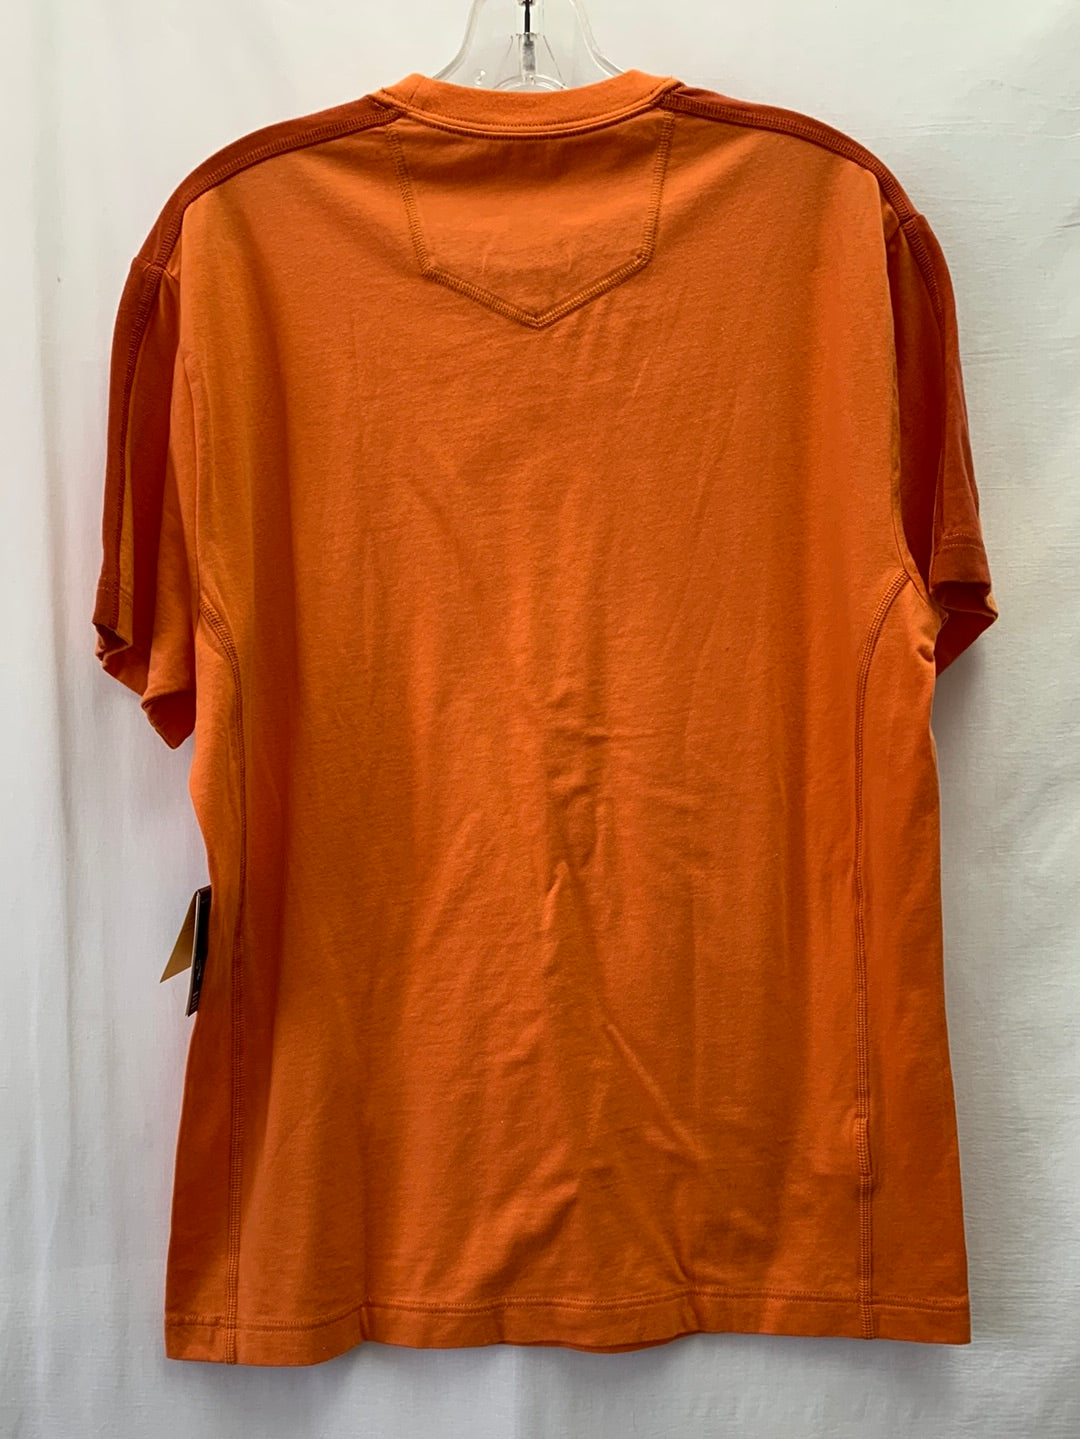 NWT - EDDIE BAUER orange Free Dry Travex Active Short Sleeve Shirt - M